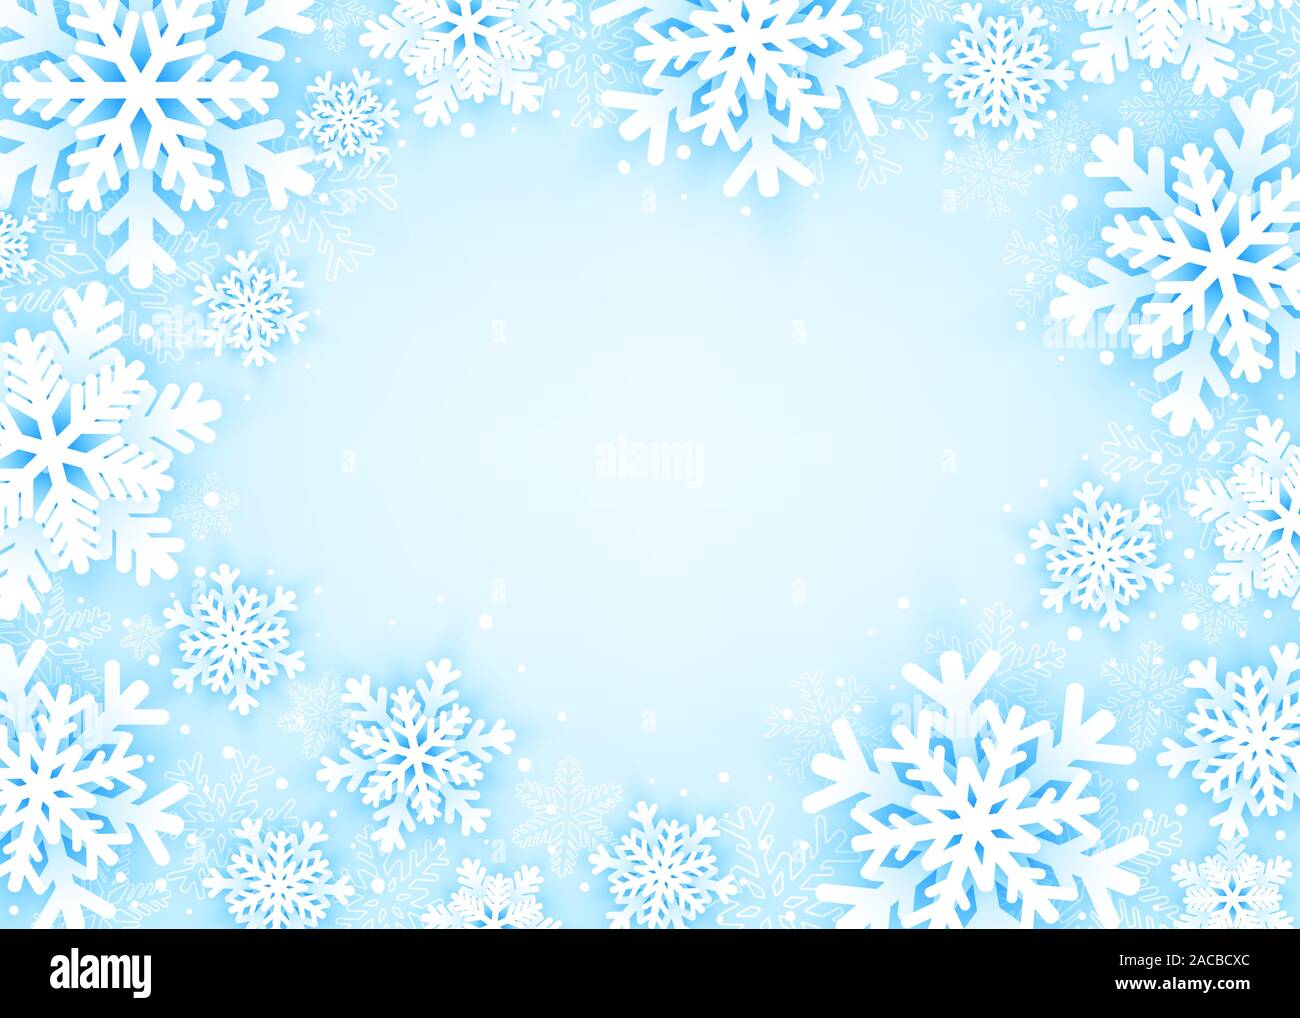 Frohe Weihnachten und guten Rutsch ins Neue Jahr Grußkarte mit Schneeflocken auf blauem Hintergrund. Vector Illustration Stock Vektor